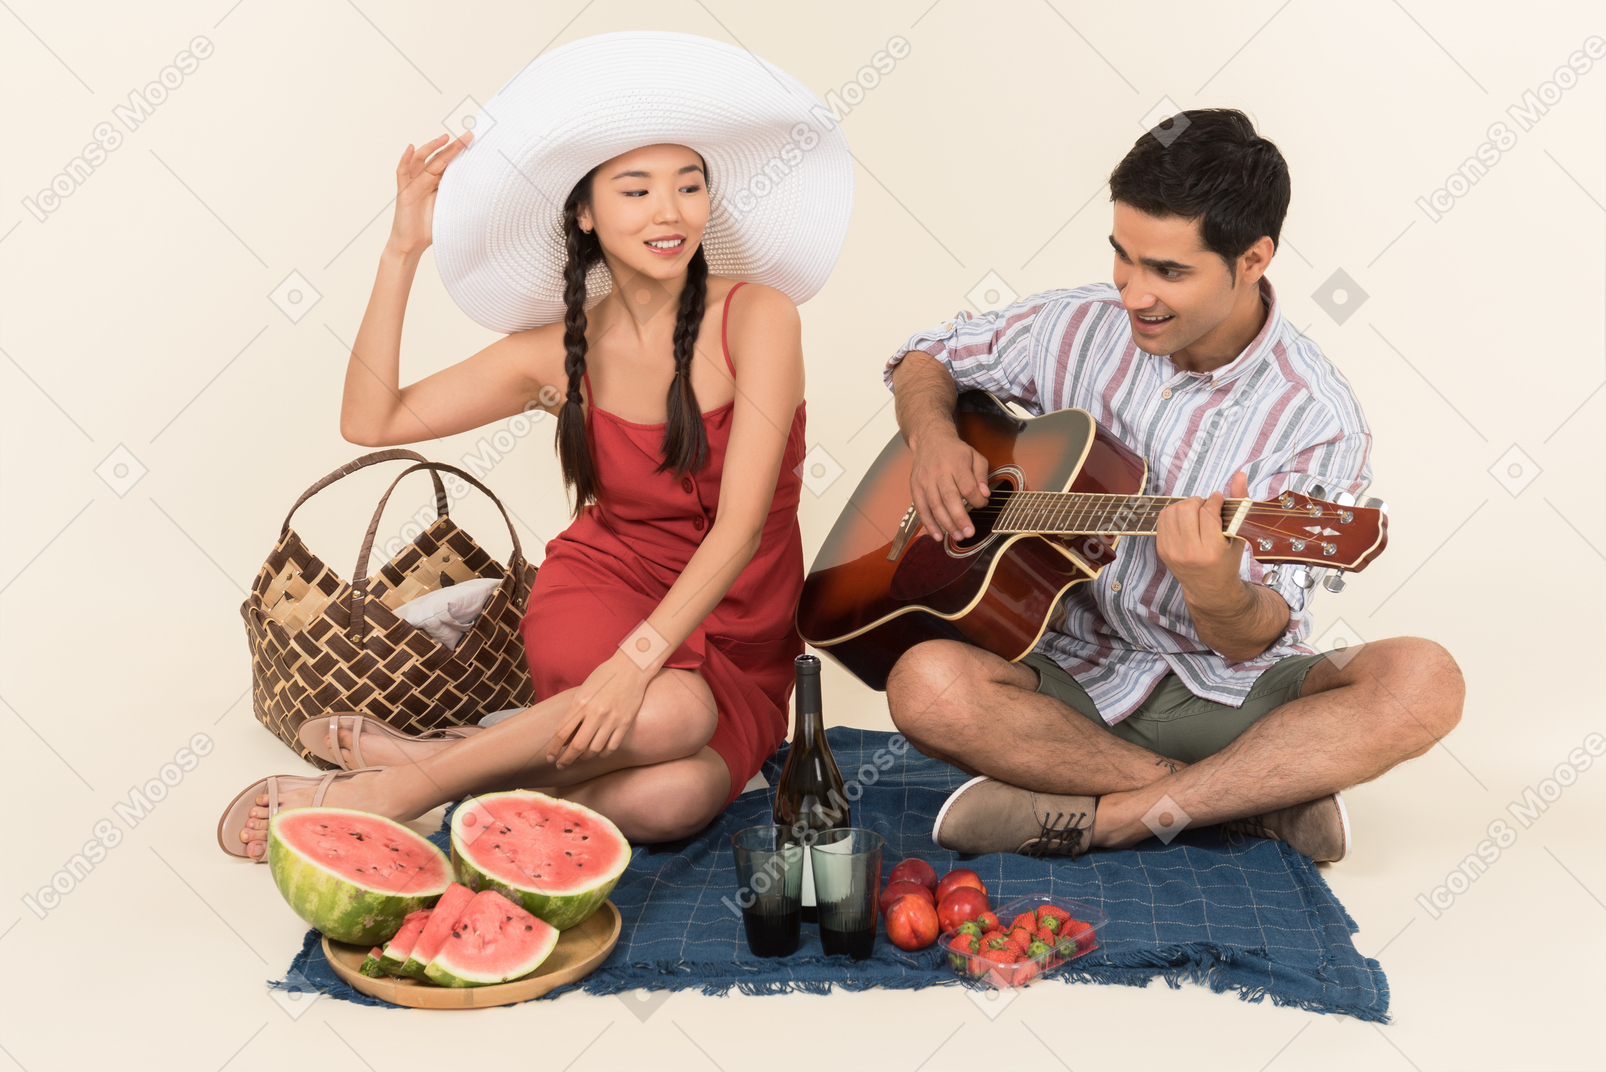 Zwischen verschiedenen rassen paare, die picknick und mann spielen auf gitarre haben